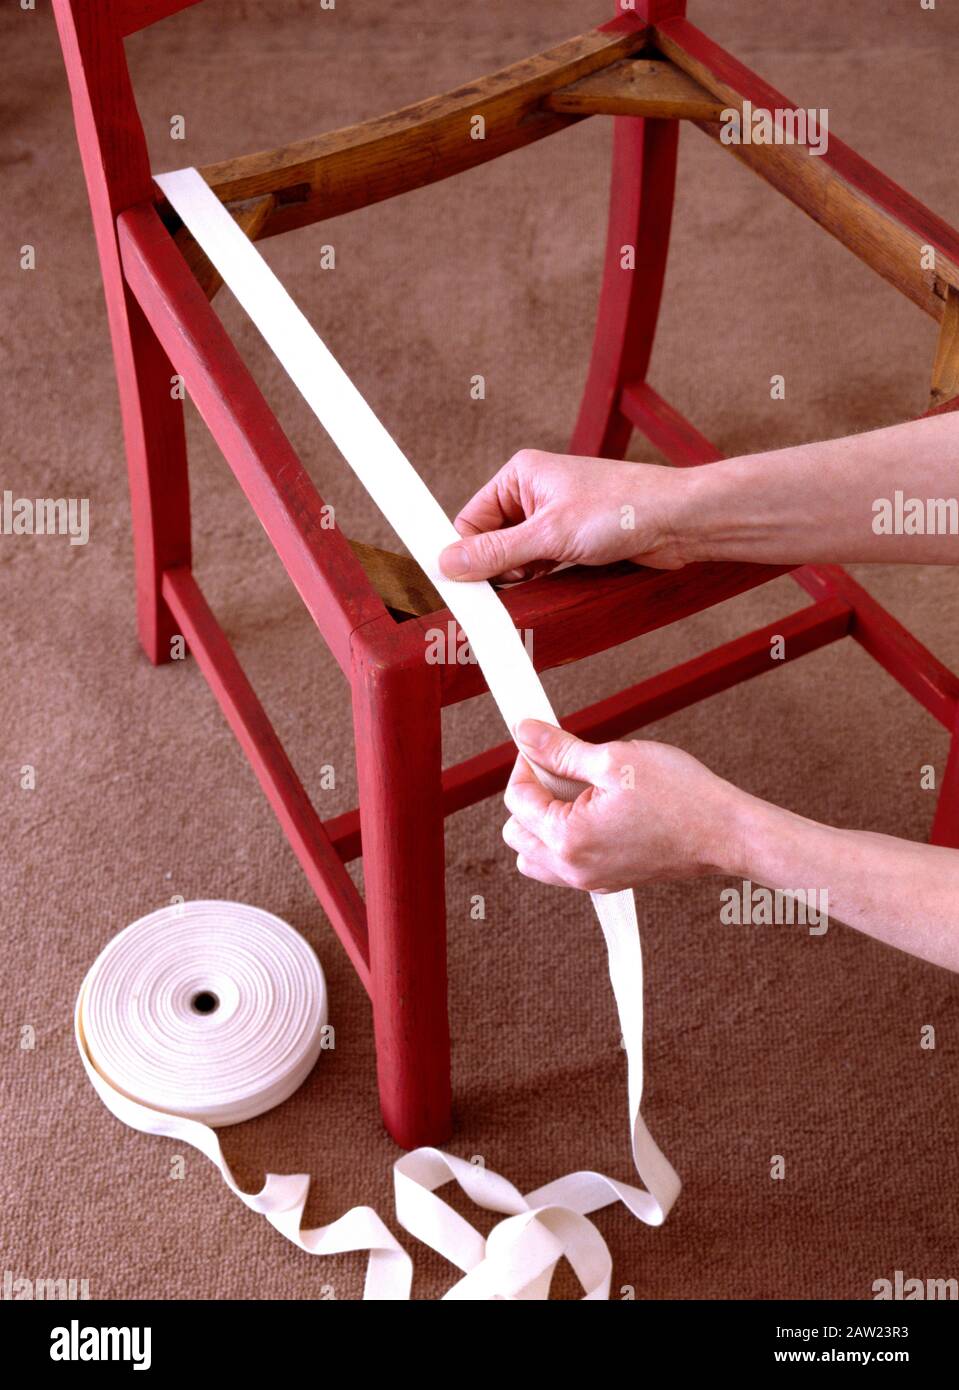 Nahaufnahmen der Hände das Gurtband auf einem rot lackierten Stuhl erneuern Stockfoto